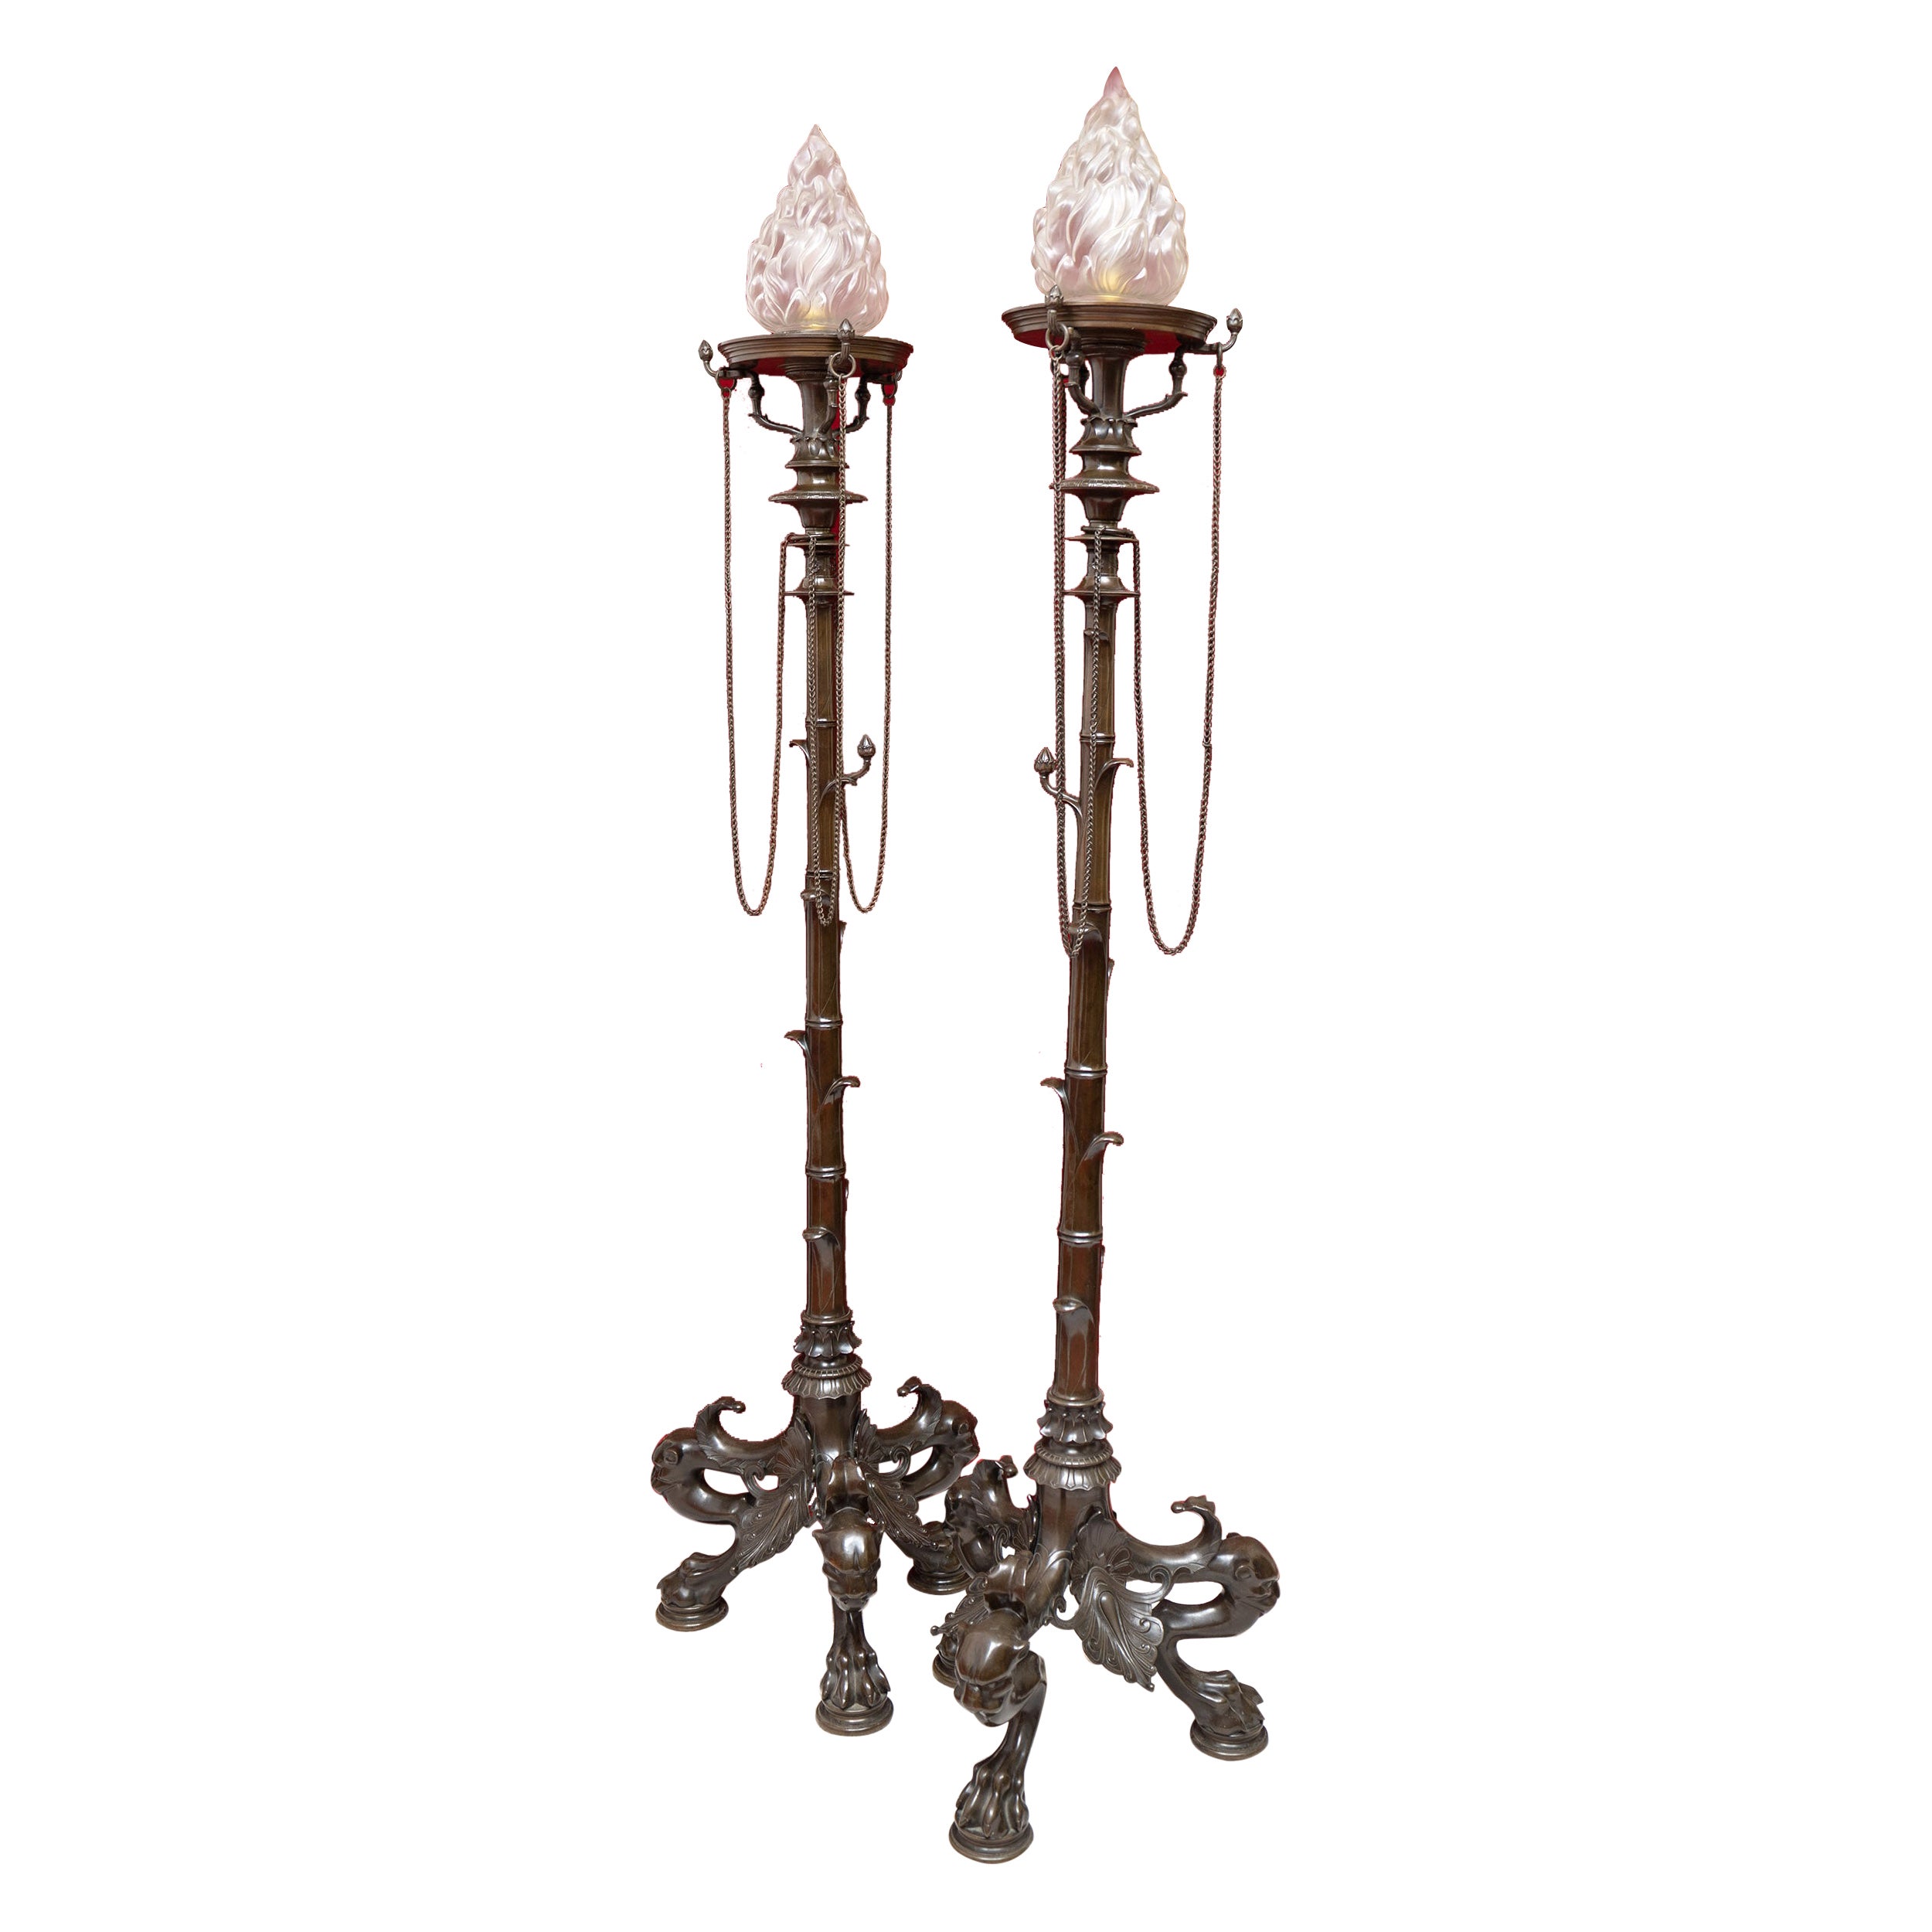 Ein exquisites Paar Bronze-Lampenständer aus der Pariser Ausstellung von 1855.